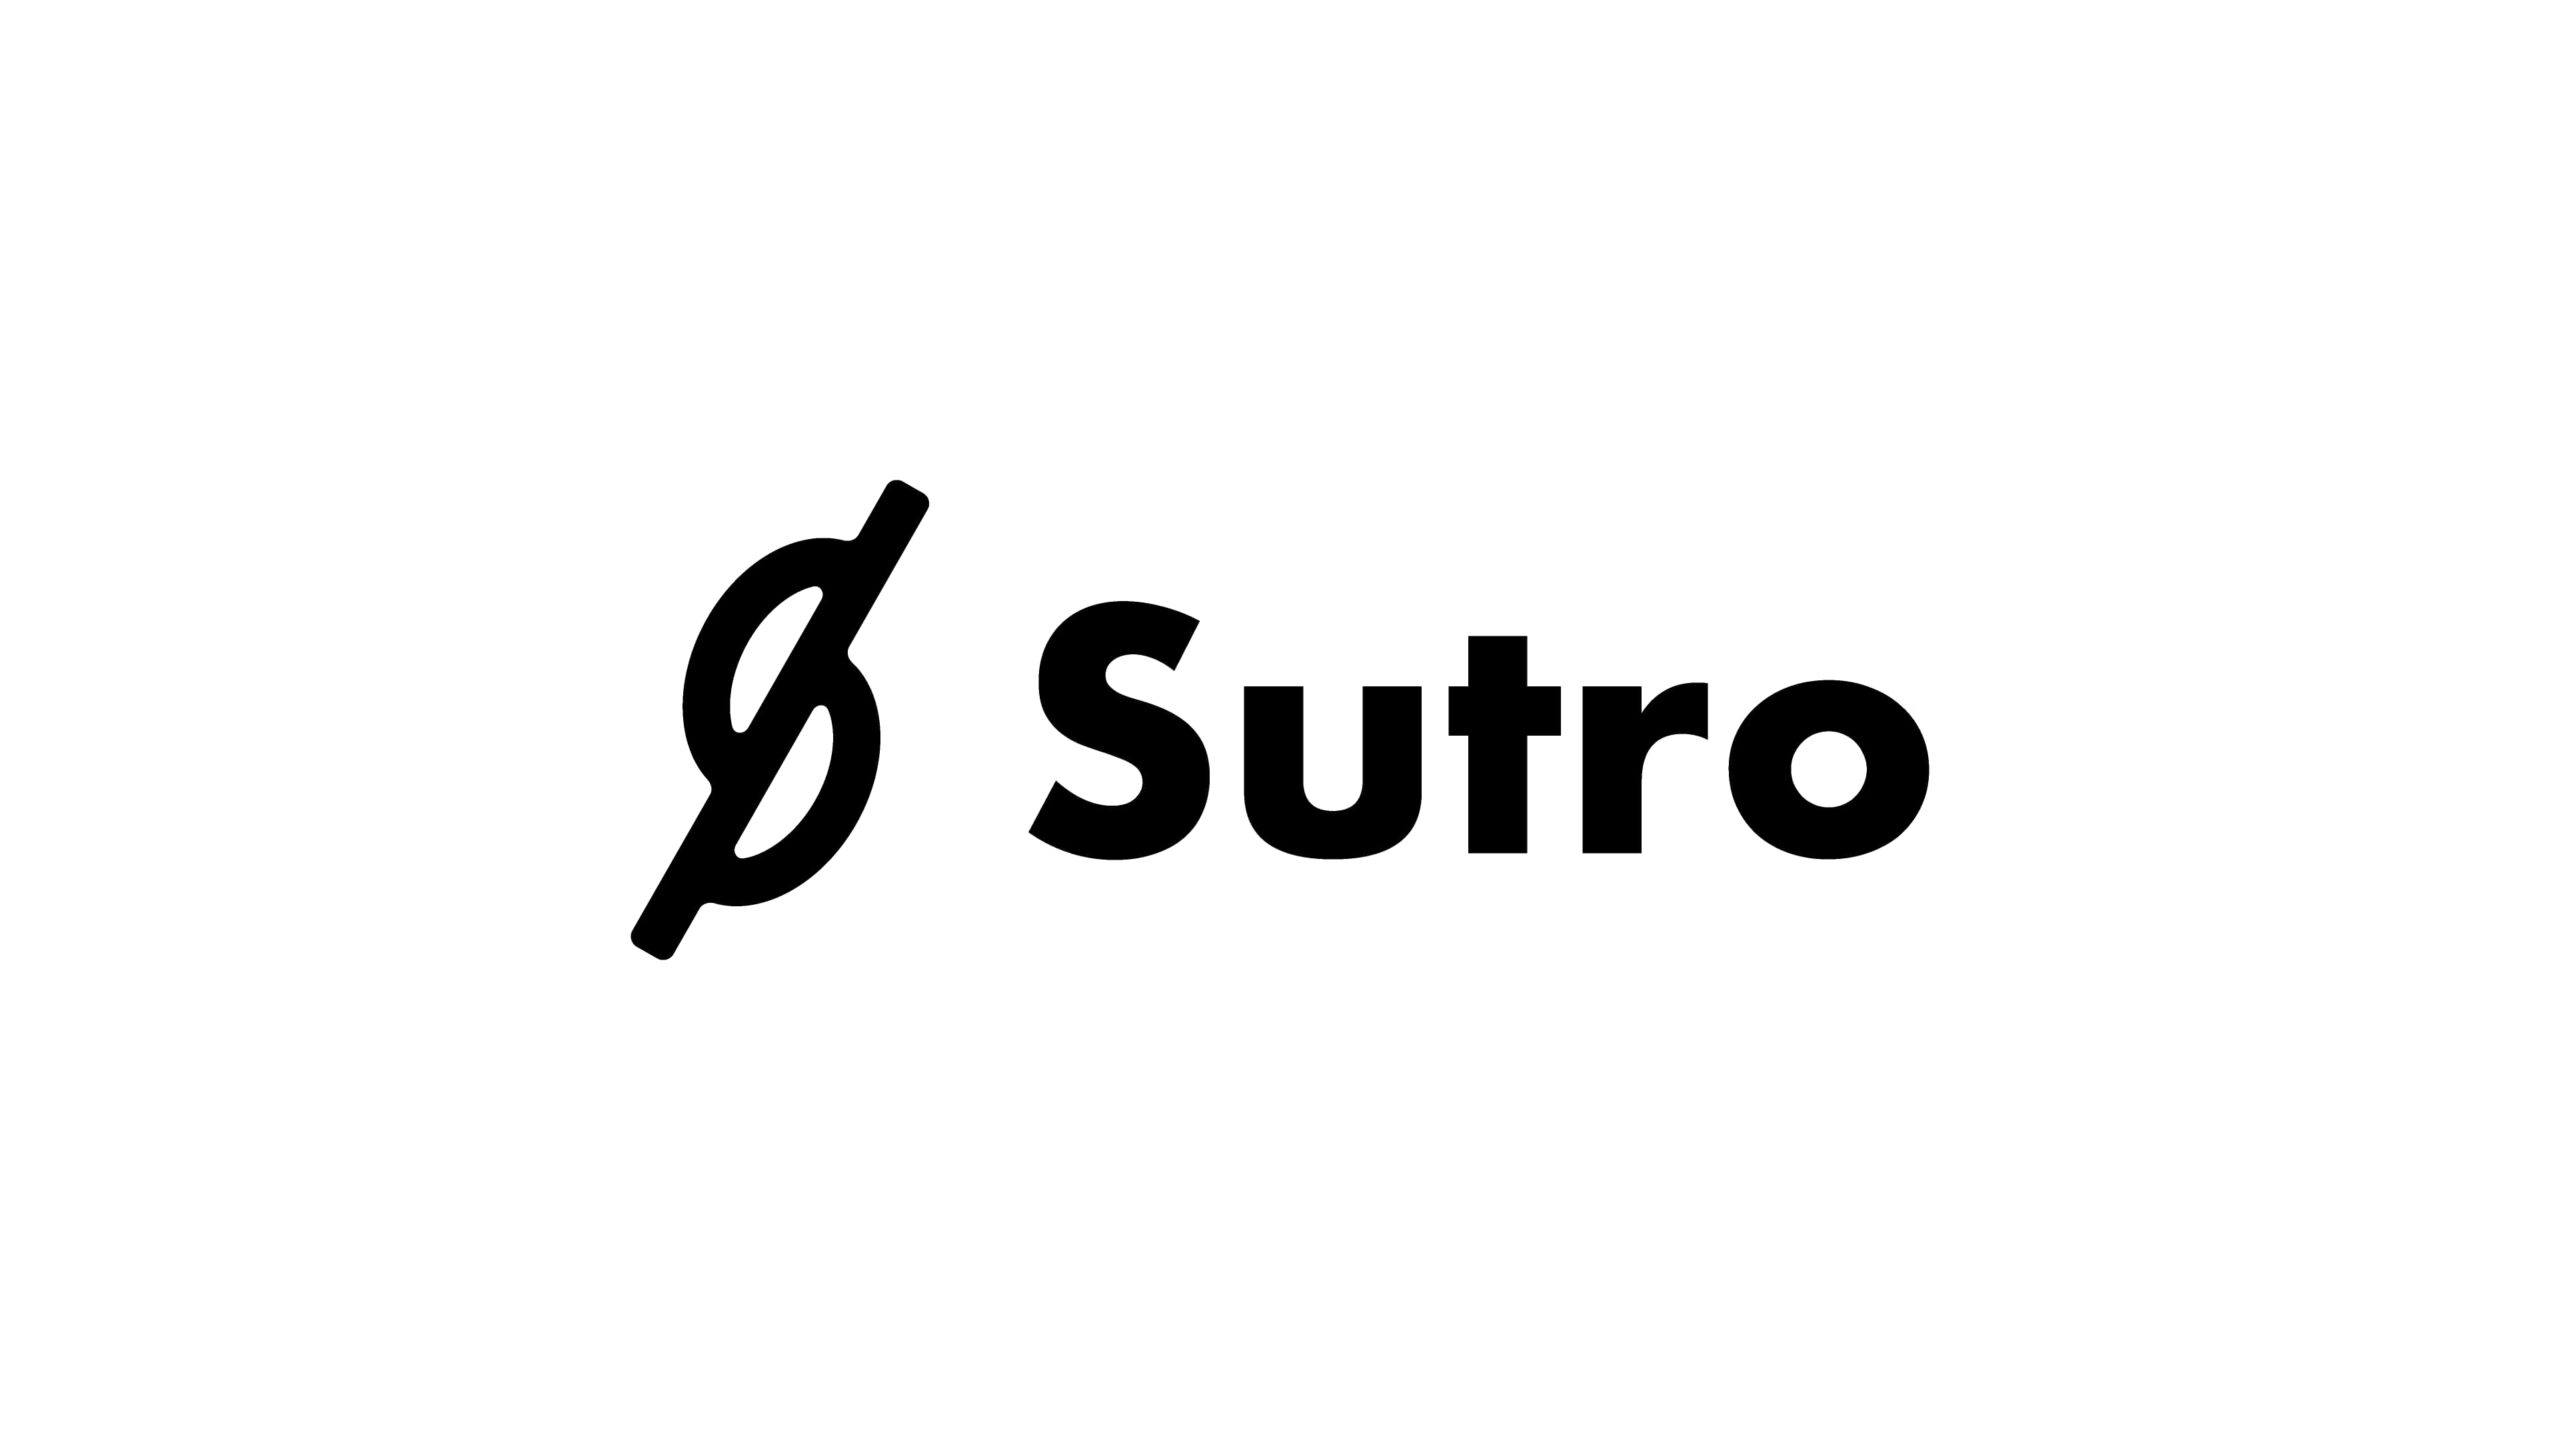 アイデア一文でアプリのプロトタイプ開発が可能に、セコイアやOpenAI重役も支援する「Sutro」